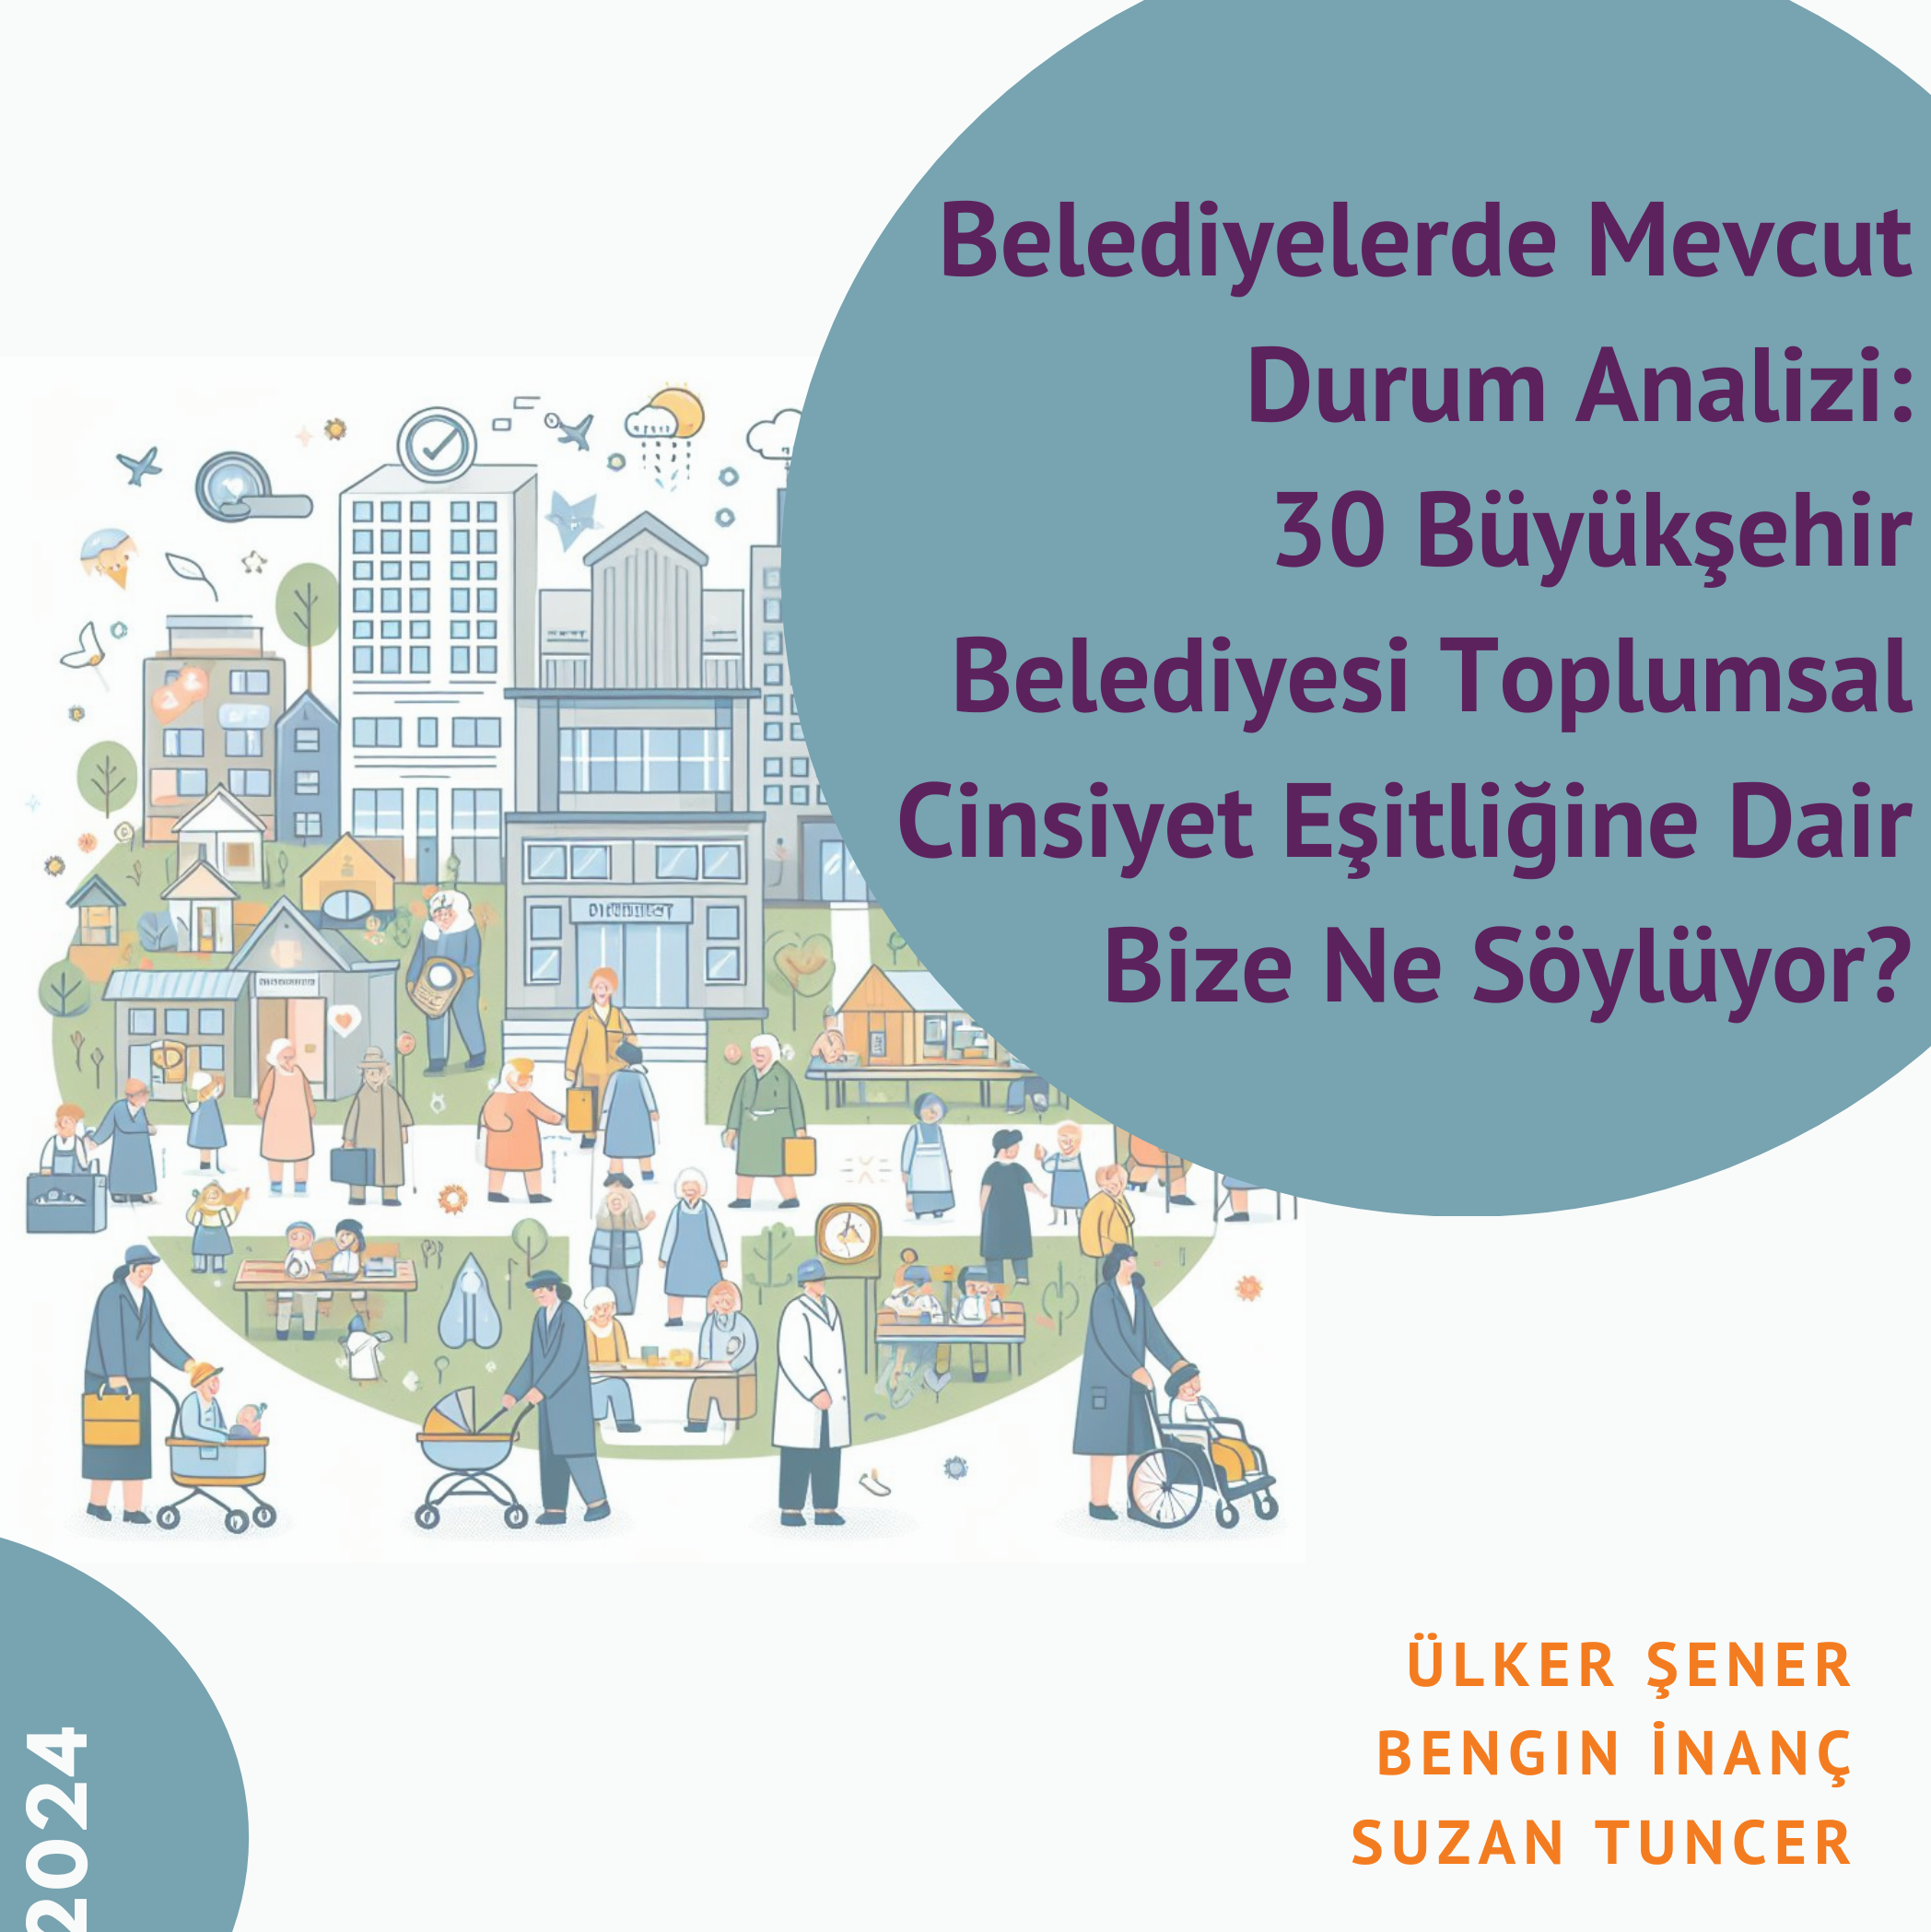 Belediyelerde Mevcut Durum Analizi: 30 Büyükşehir Belediyesi Toplumsal Cinsiyet Eşitliğine Dair Bize Ne Söylüyor?